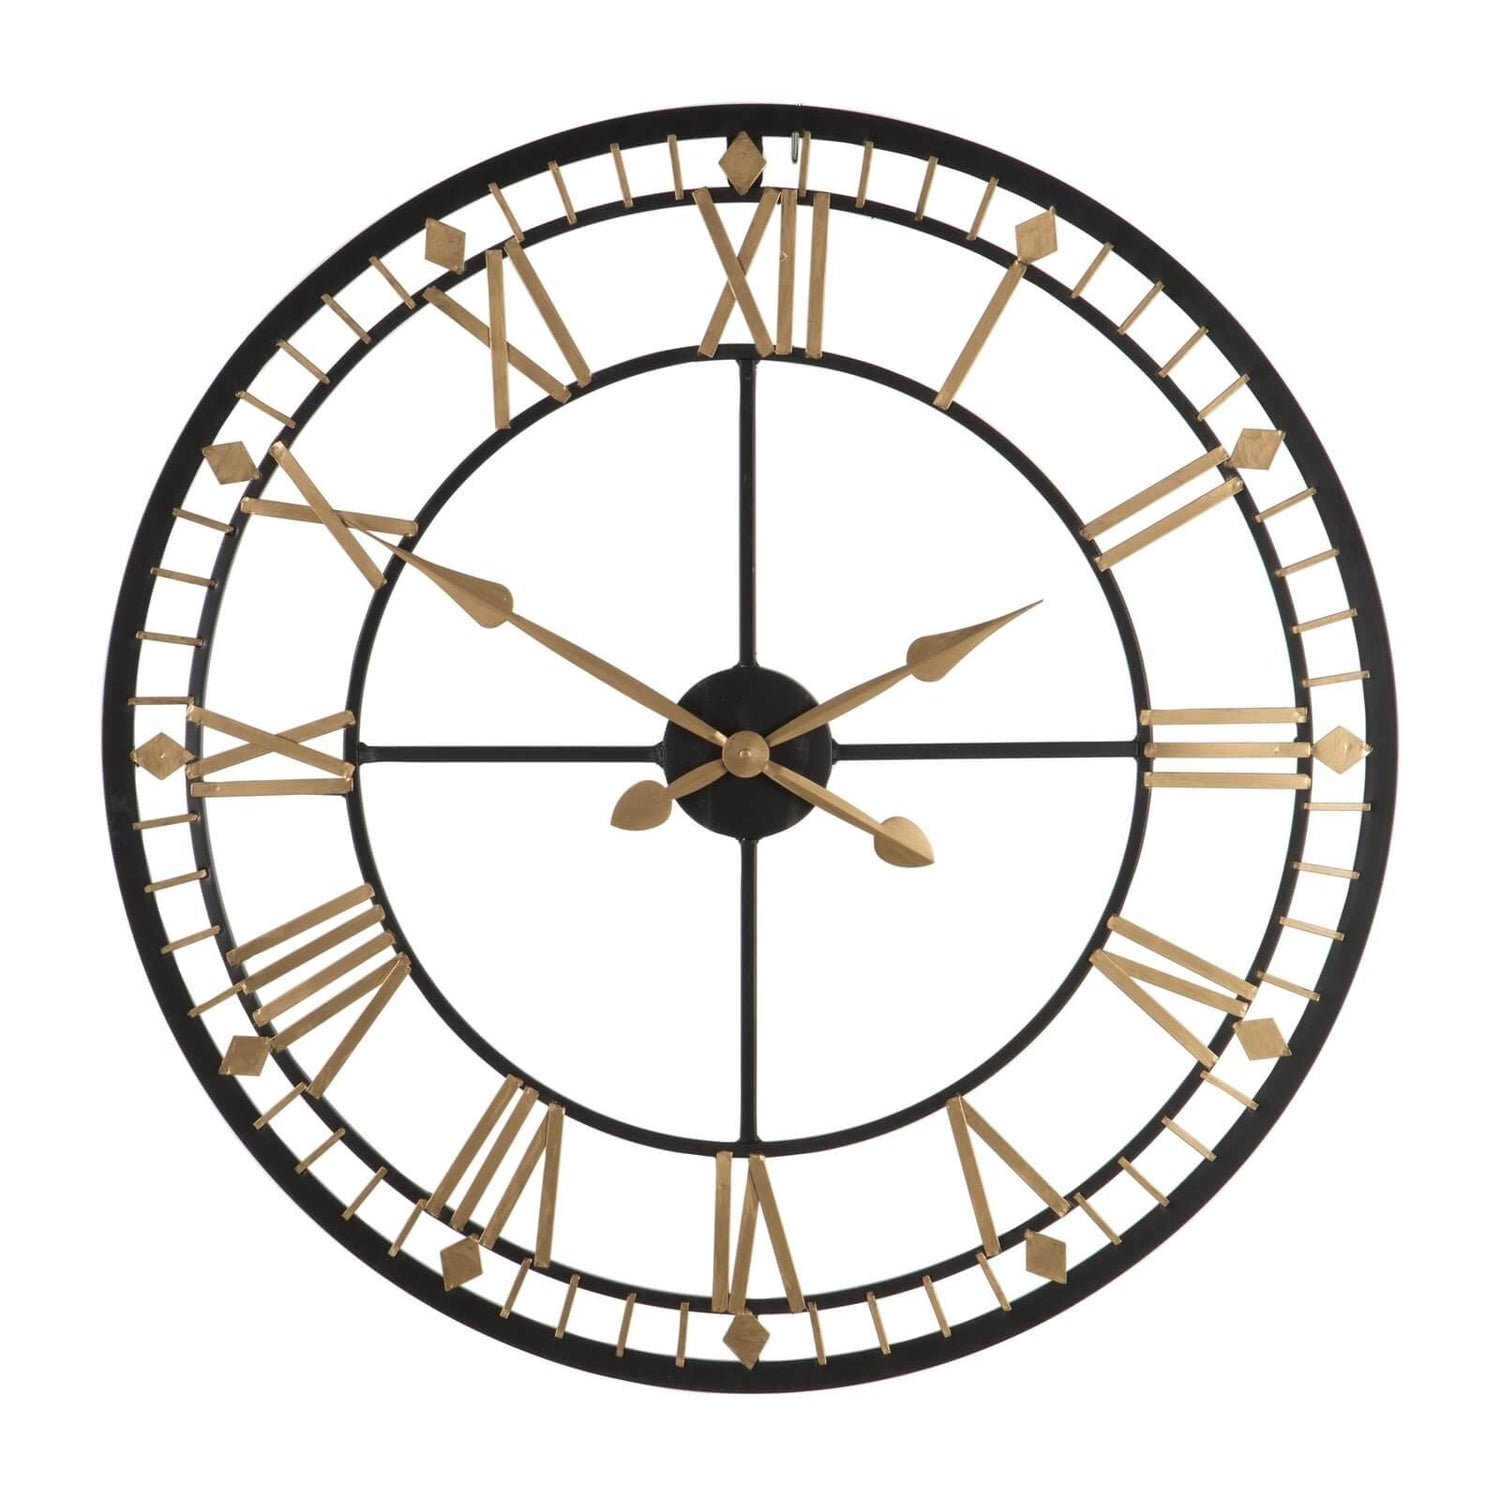 Часы настенные 40. Часы настенные Black Metal Clock (40x40 см) 1285860. Часы настенные Cloc Color 80x80x4 см image Metal Clock 79880. Часы кованые настенные. Часы настенные 80 см.